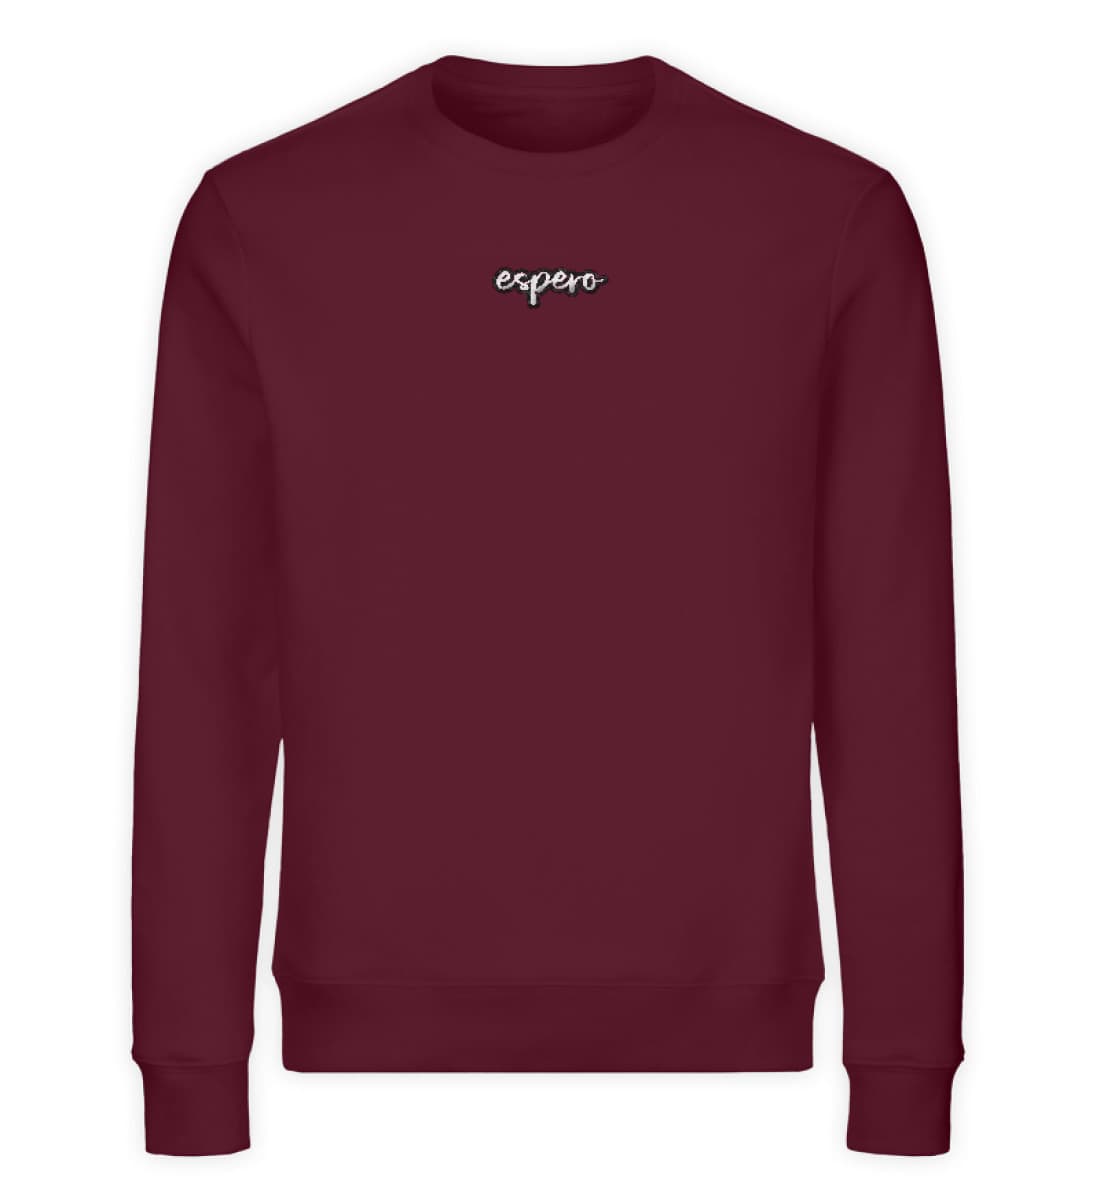 Damensweater espero Stick Bordeaux - Unisex Organic Sweatshirt-839